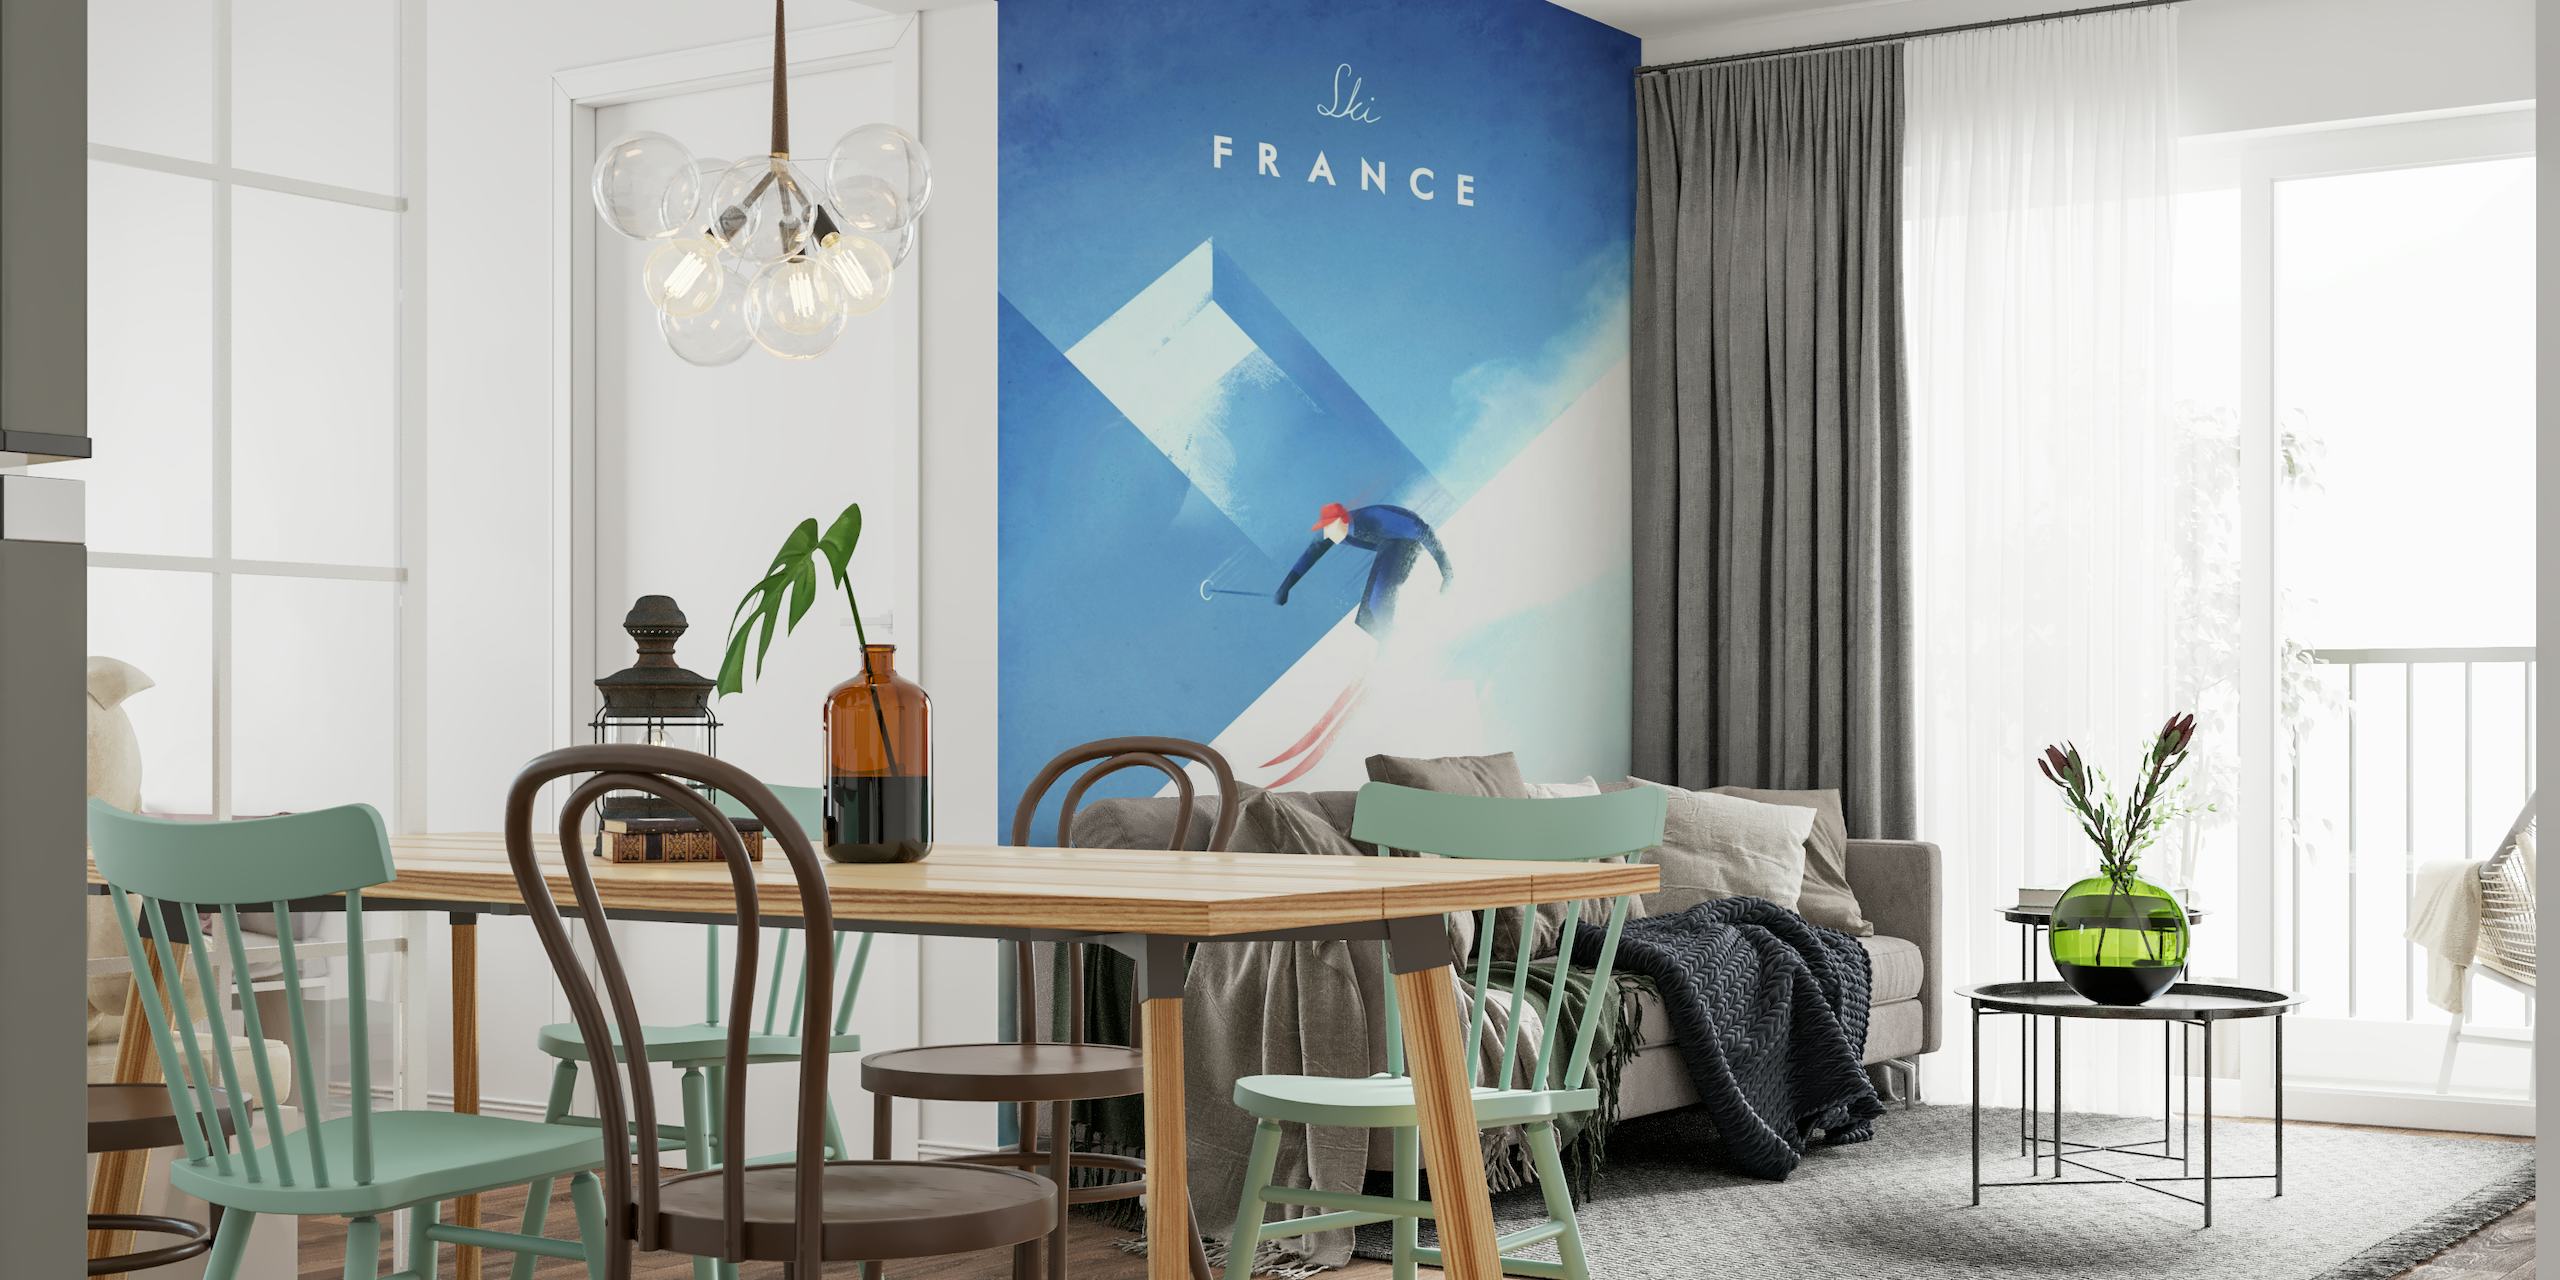 Ski France Travel Poster tapetit